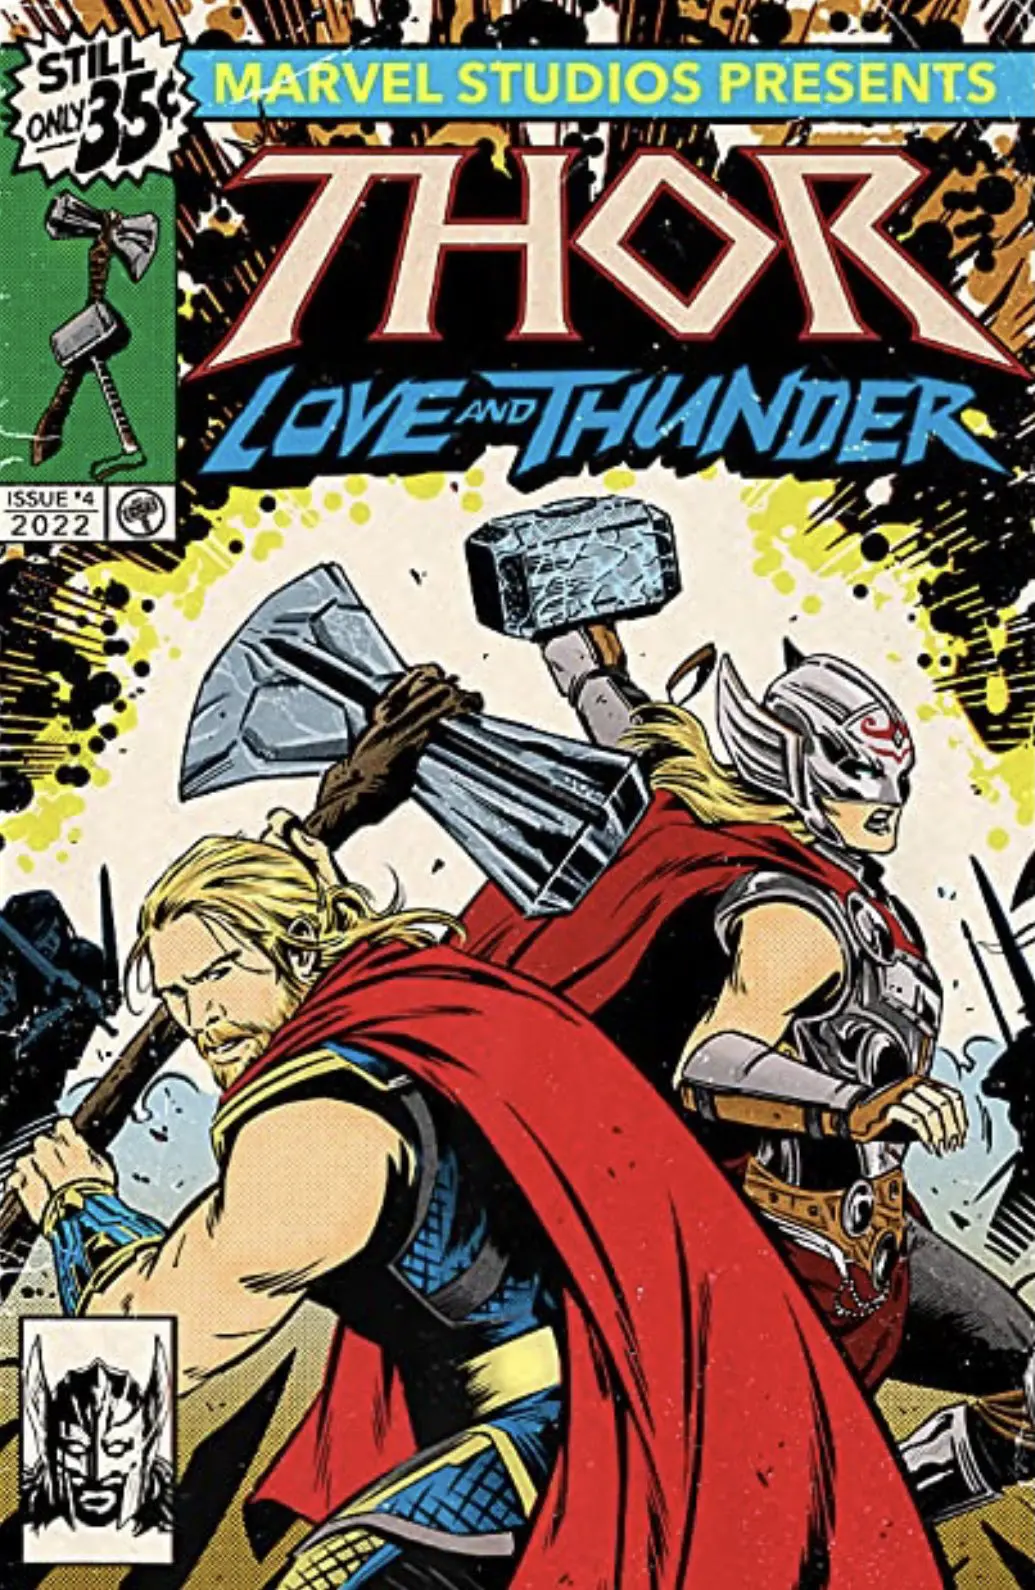 Thor 4 - Imagens promocionais